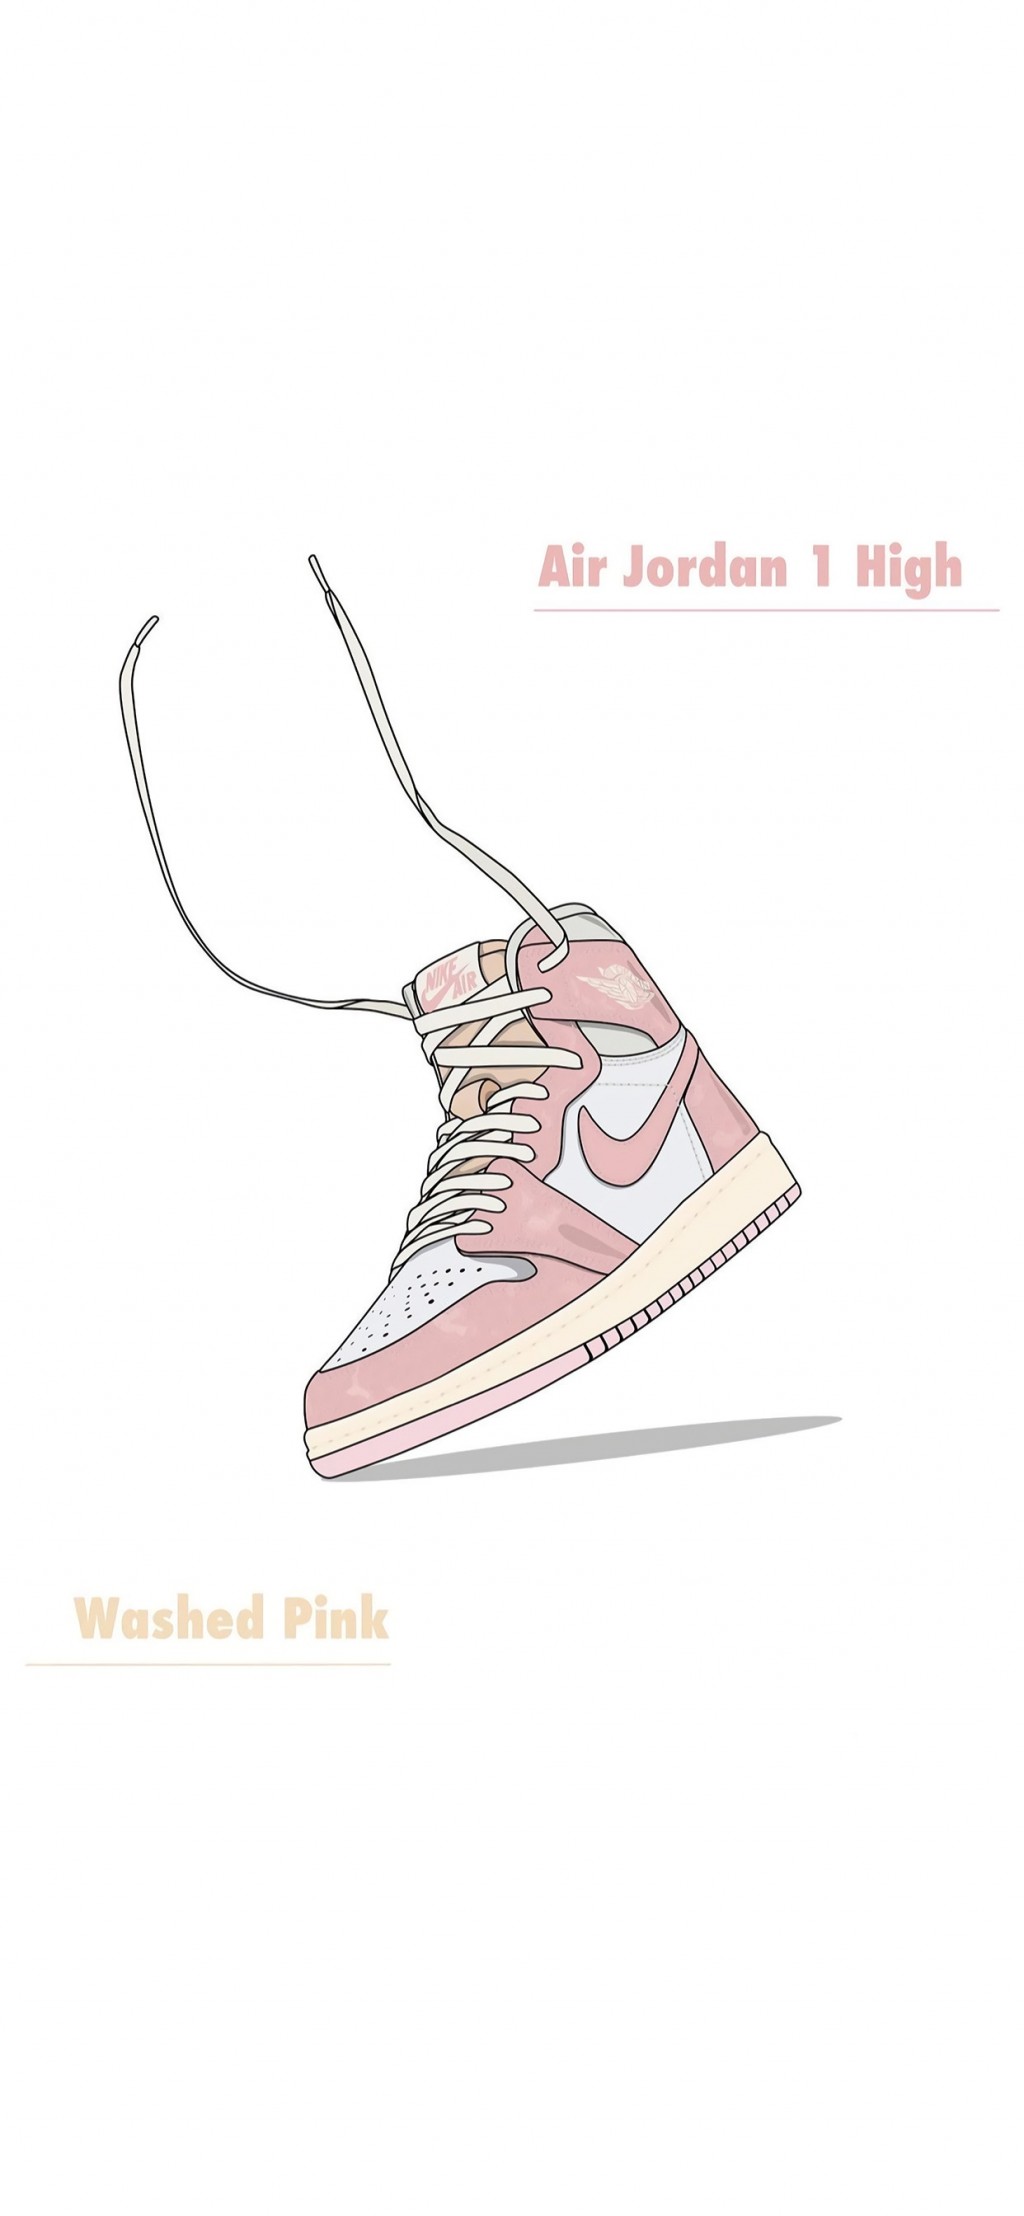 耐克时尚运动鞋系列插画手机壁纸